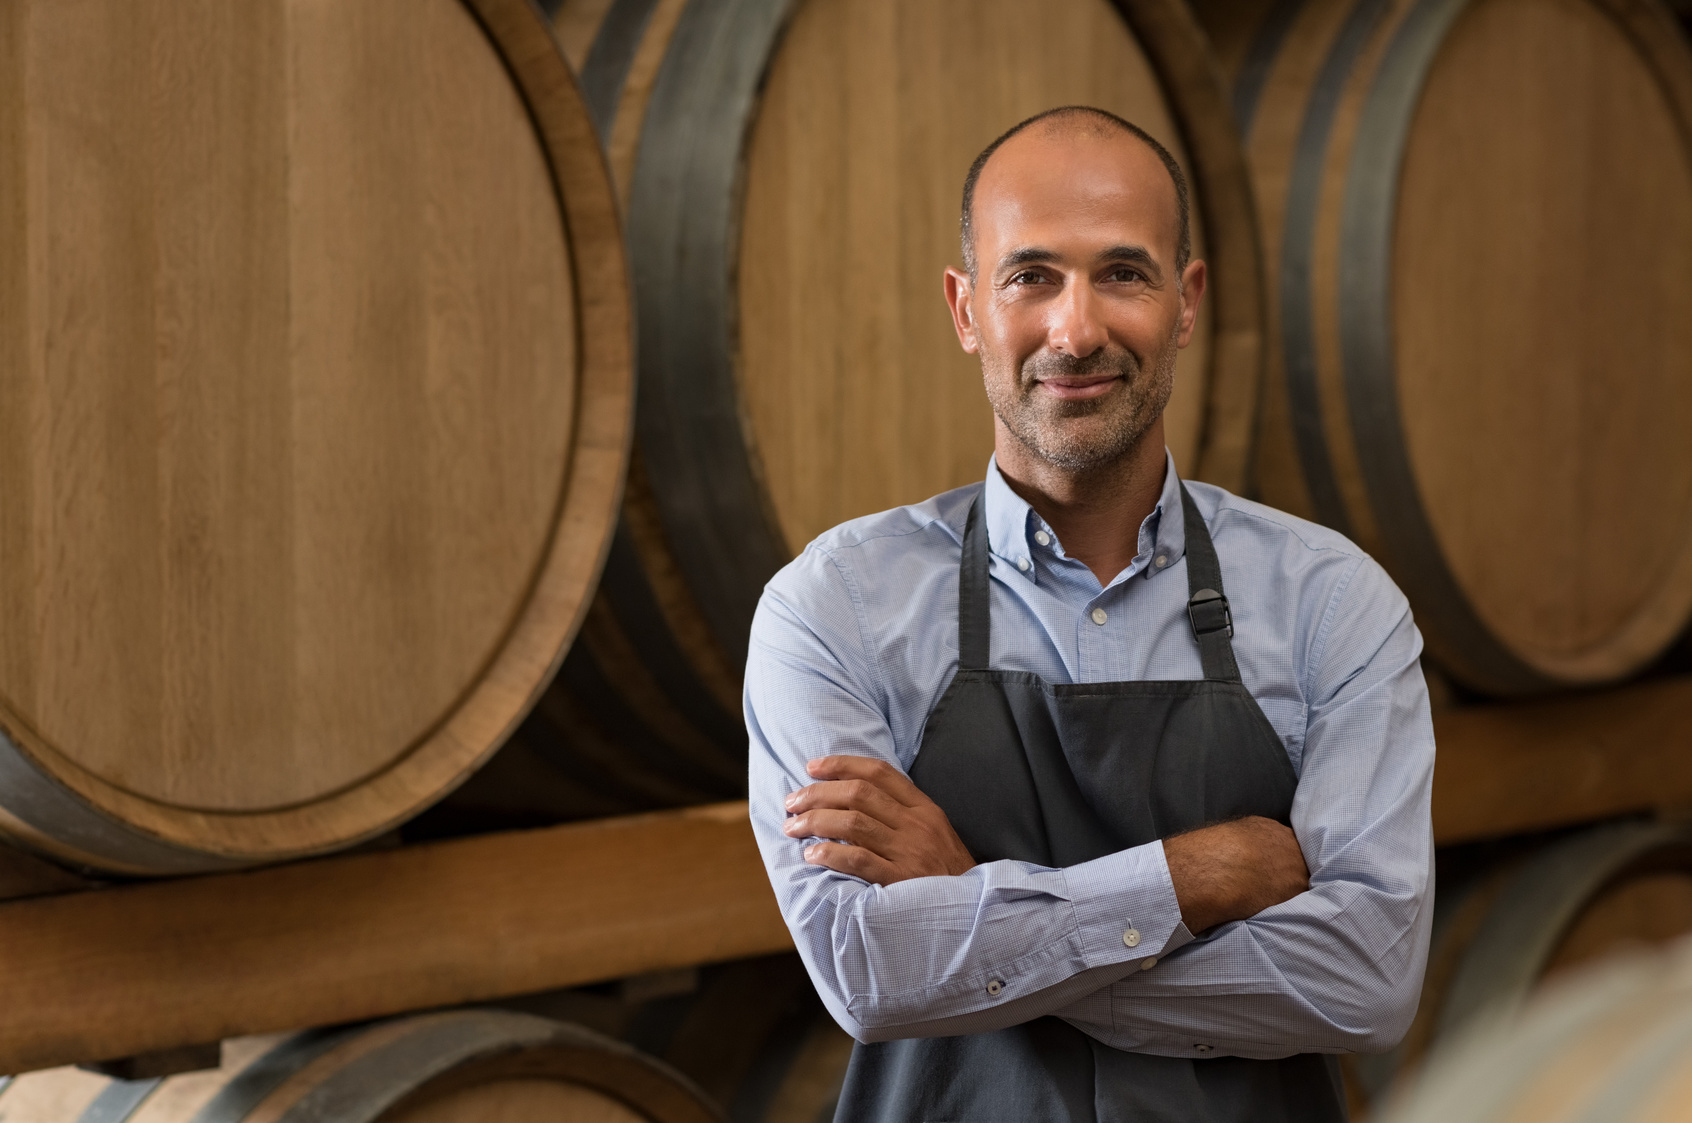 Renting de barricas, lo último para impulsar el negocio en el sector del vino